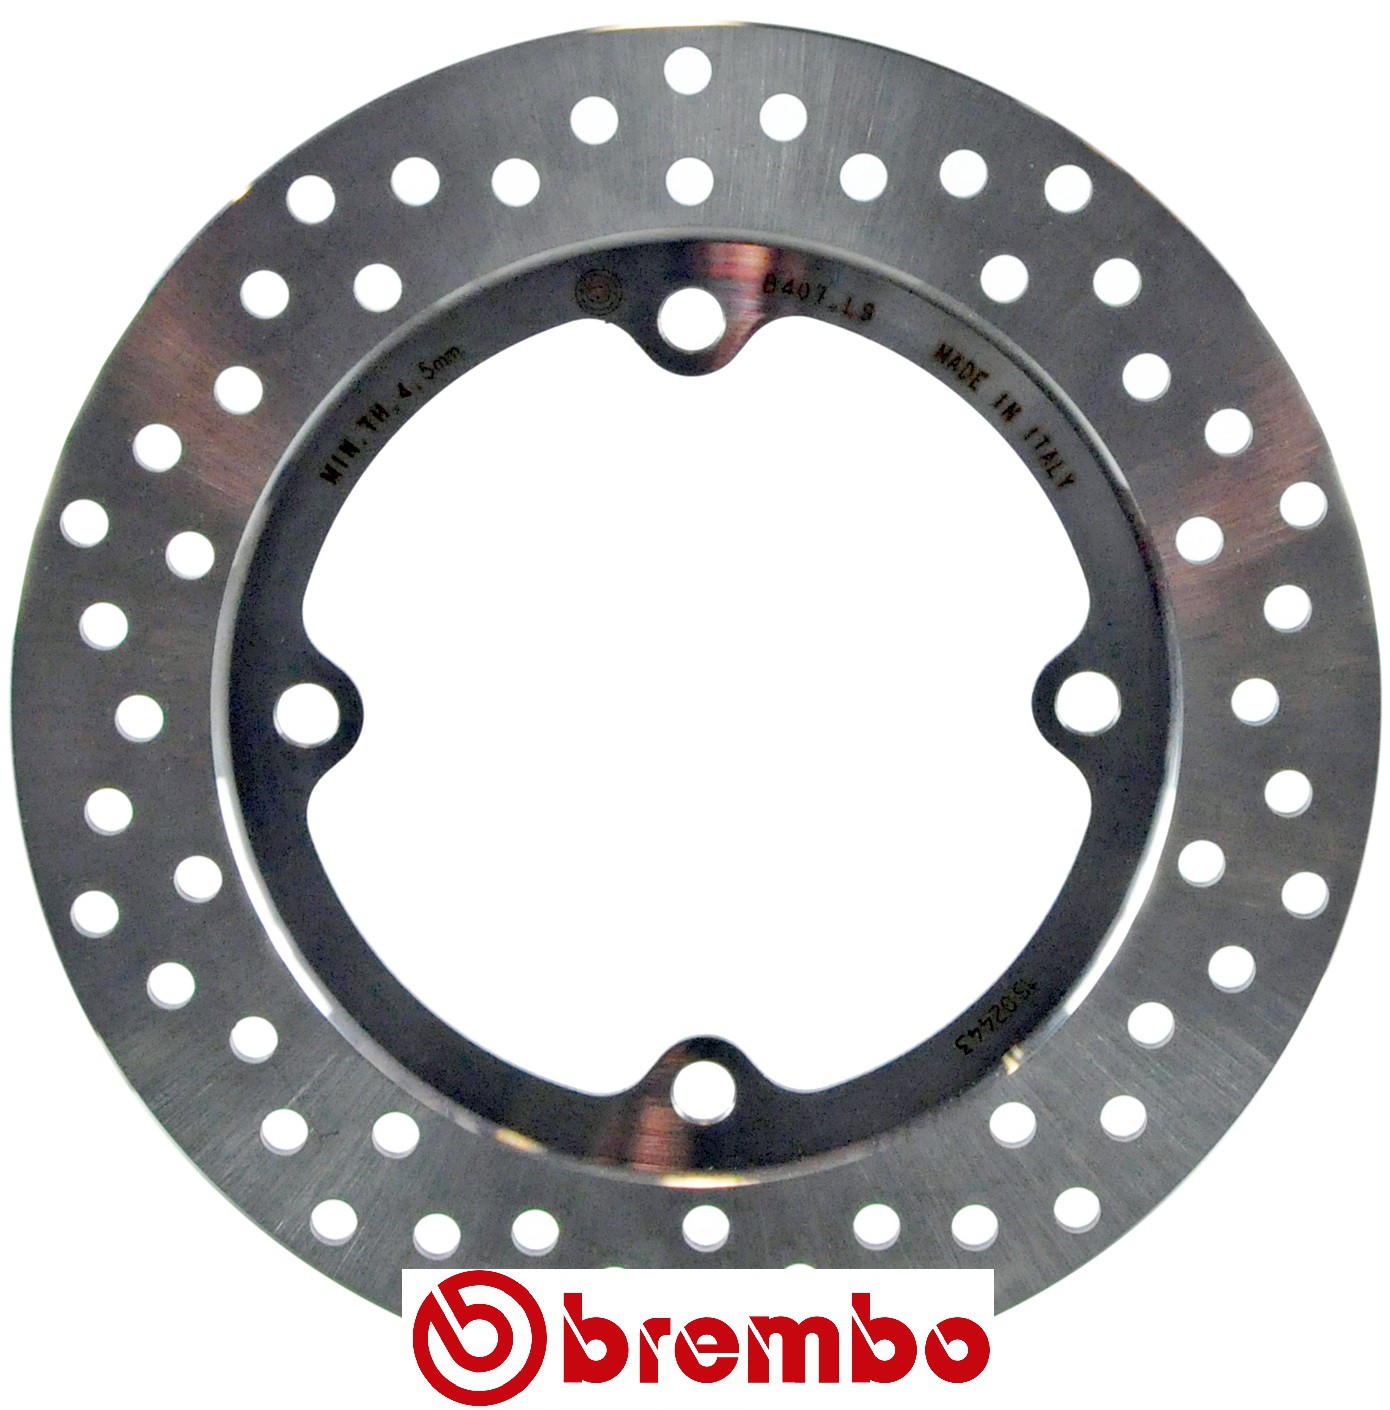 Disque de frein arrière Brembo pour CBR 650 F (14-18)